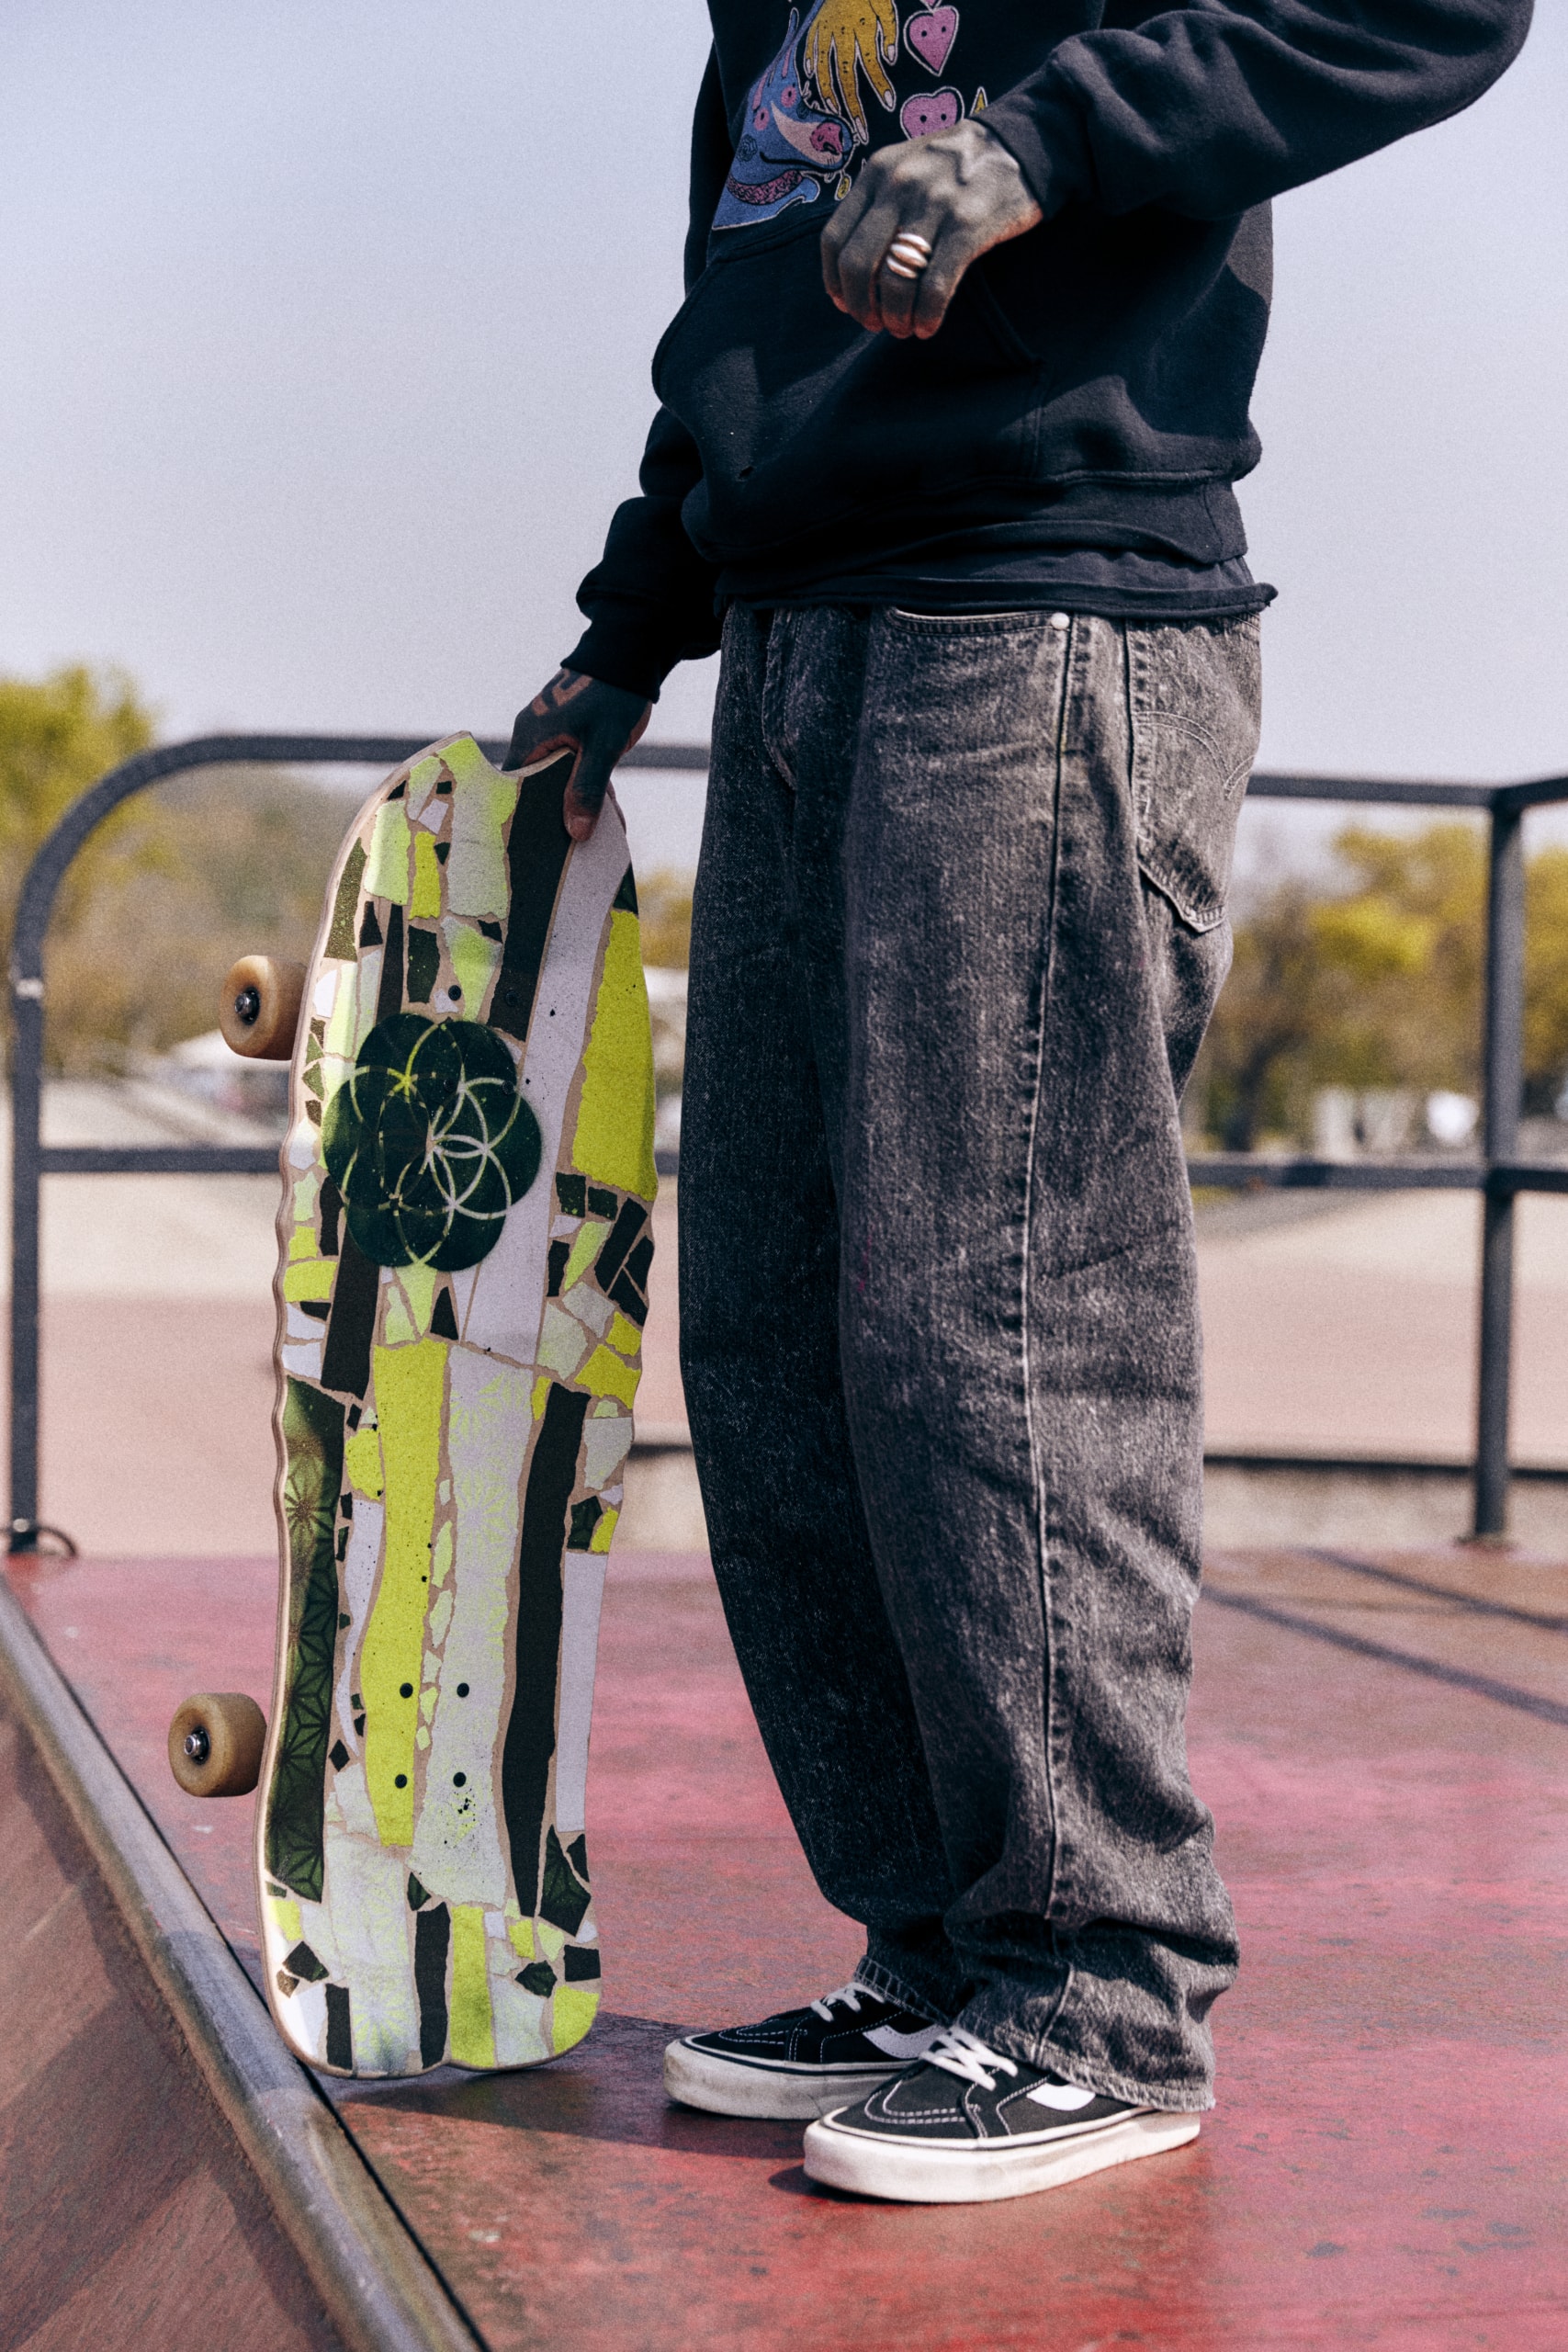 반스가 전하는 스케이터 구현준의 ‘그립 테이프 커스텀’ 이야기, vans, skateboard, 스케이트보더